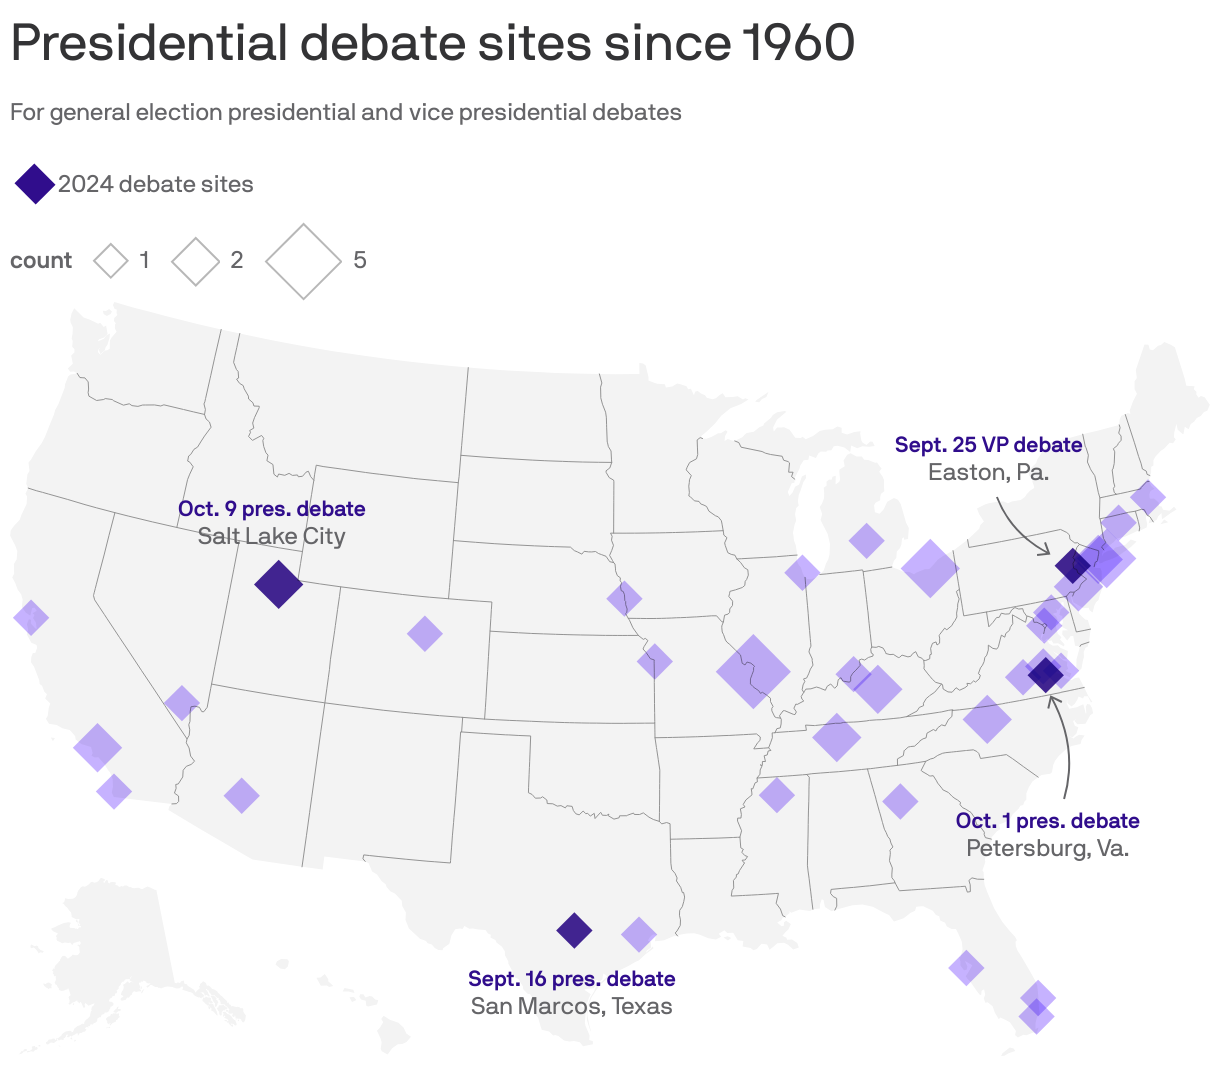 Presidential debate sites since 1960